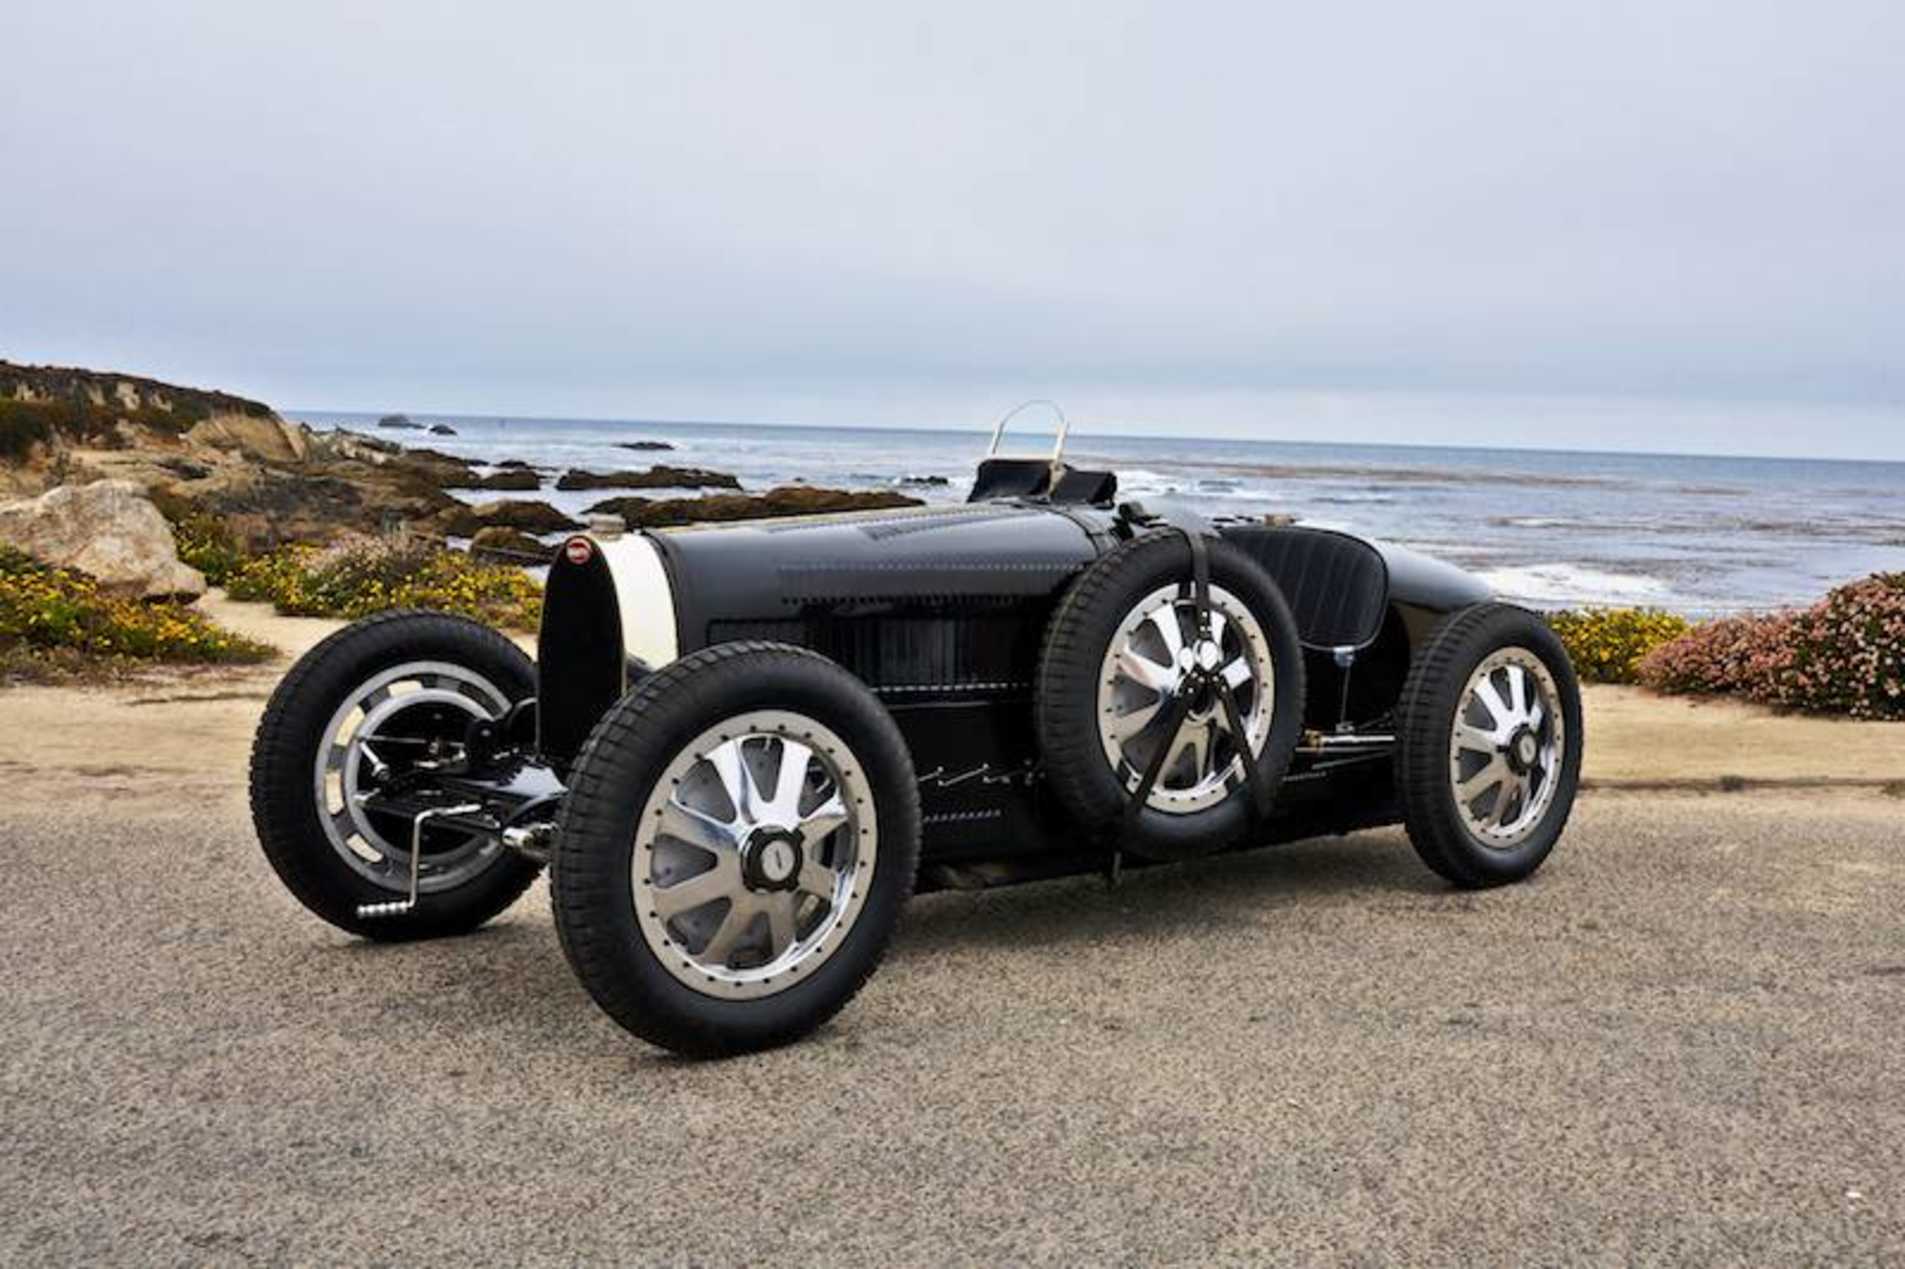 Bugatti "type 35" de couleur noir stationné avec une vue d'ensemble de l'auto